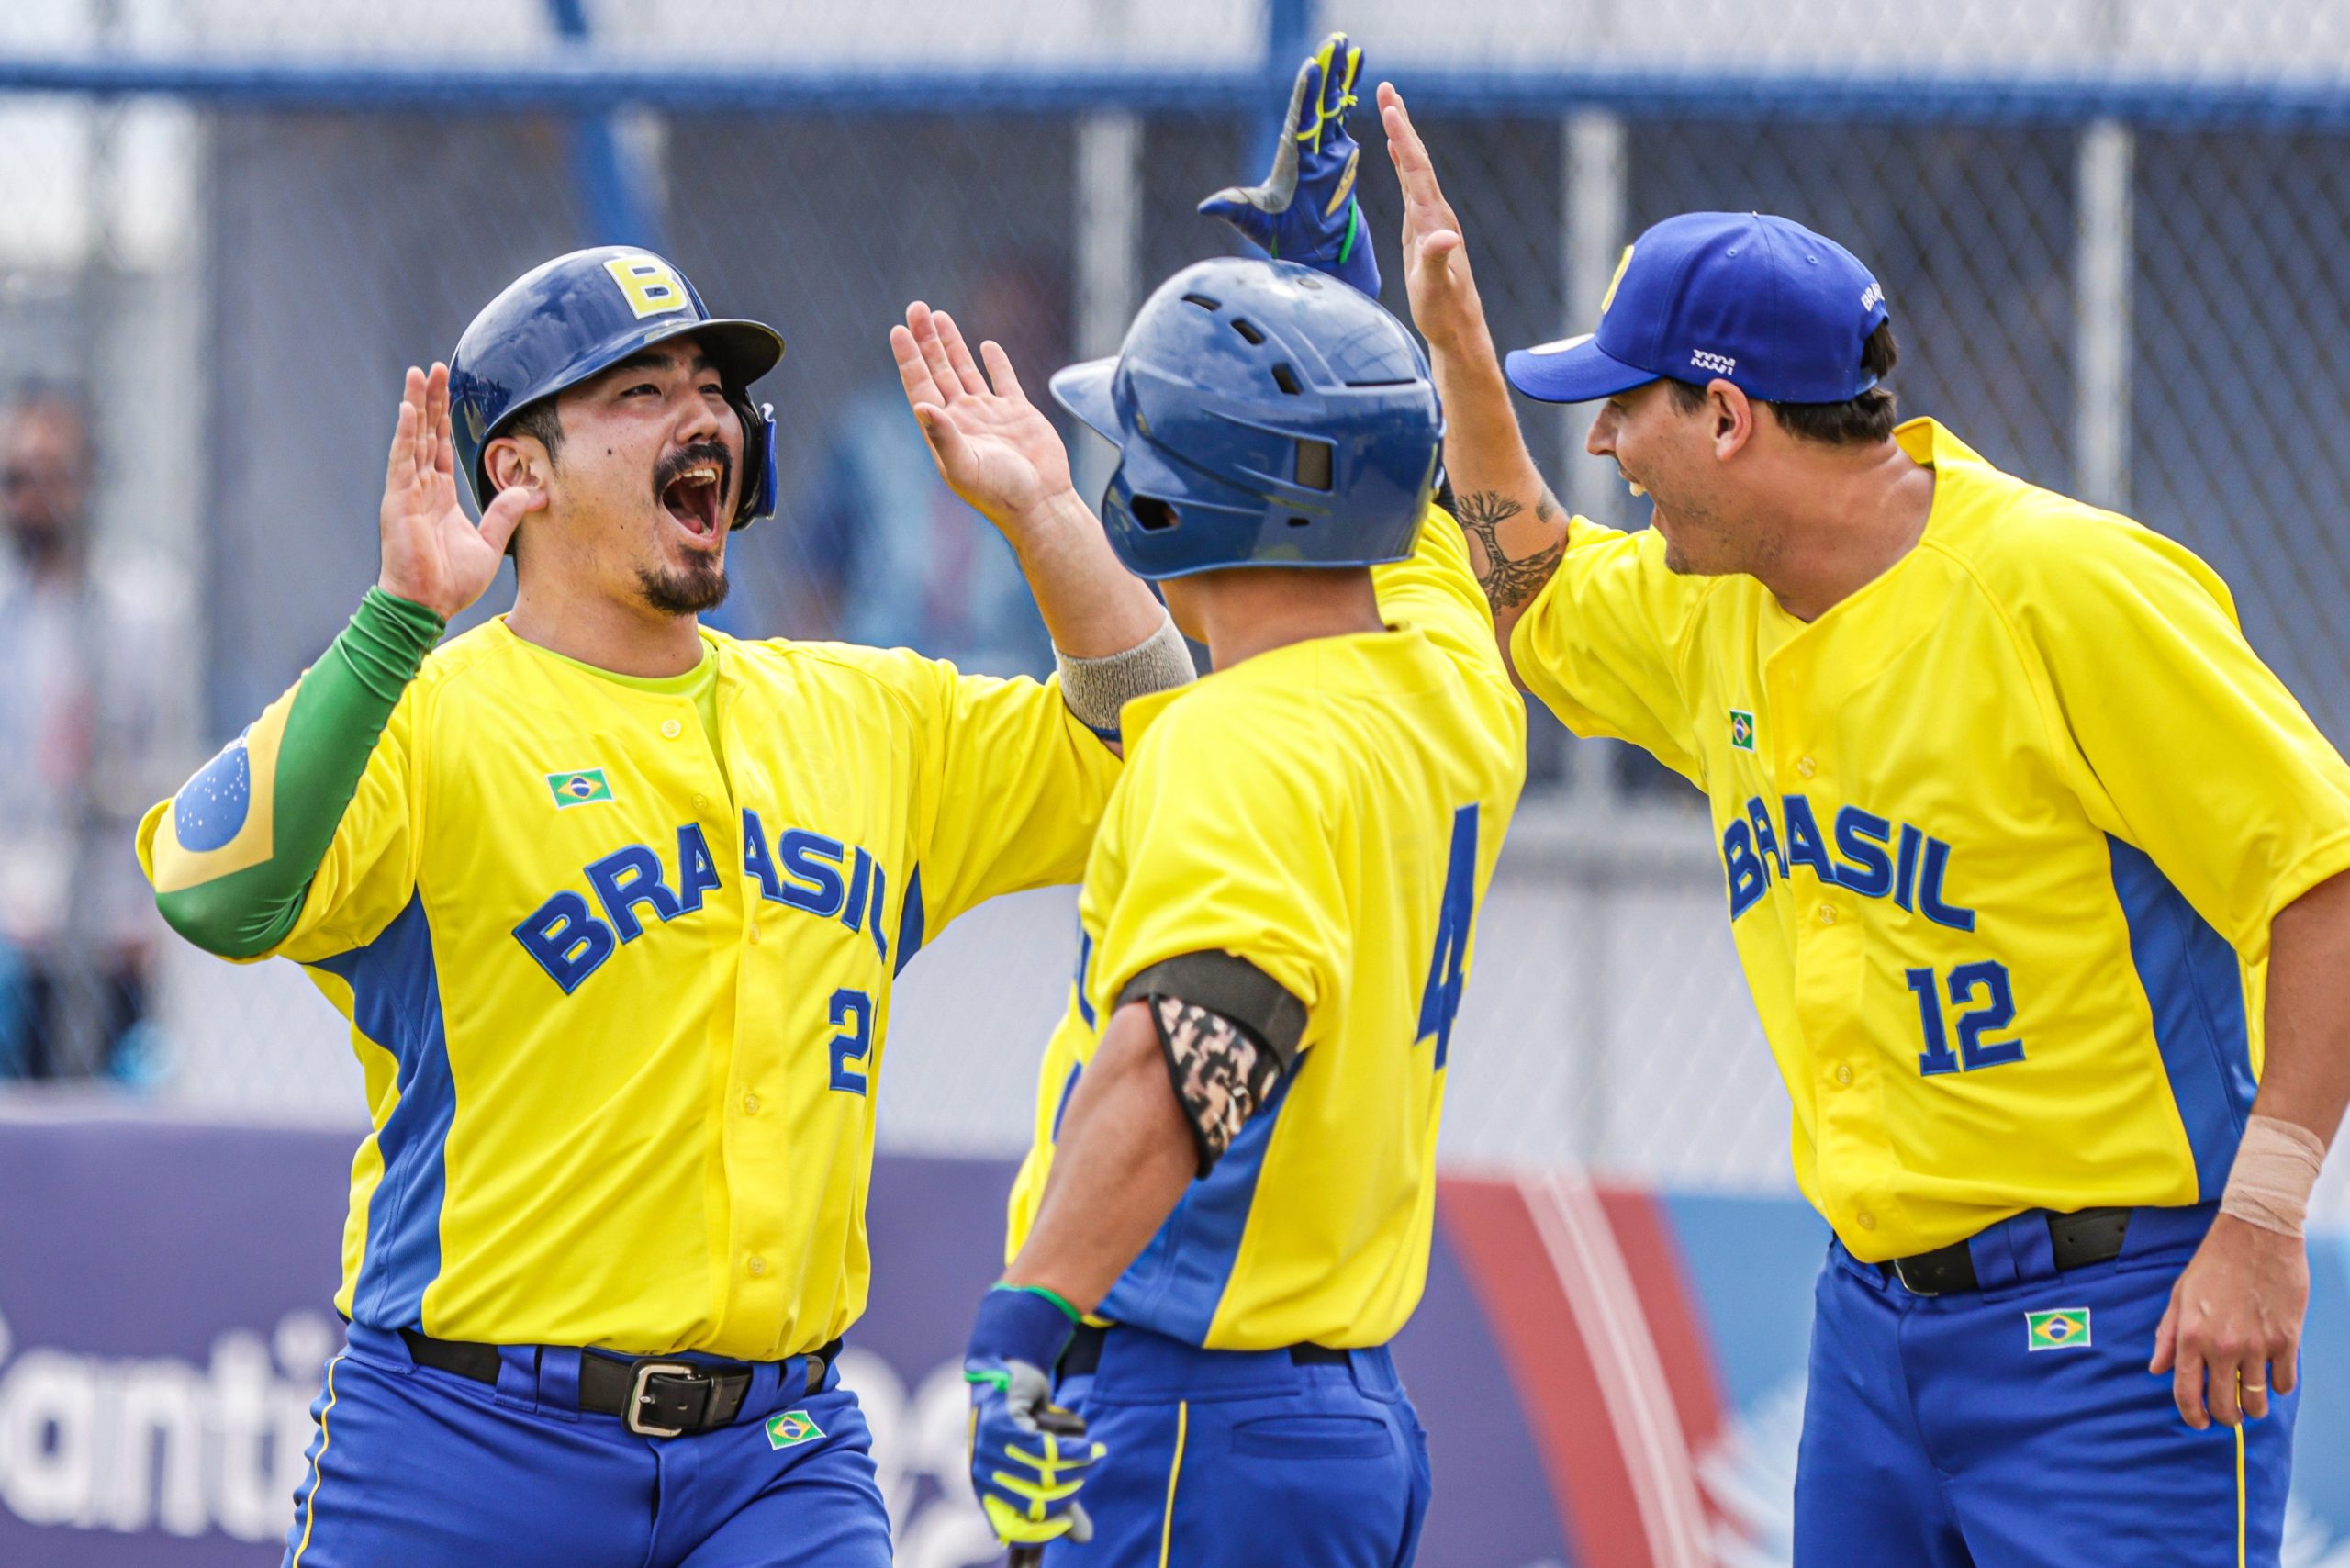 Brasil estreia no beisebol masculino com vitória sobre Venezuela (Wander Roberto/COB)